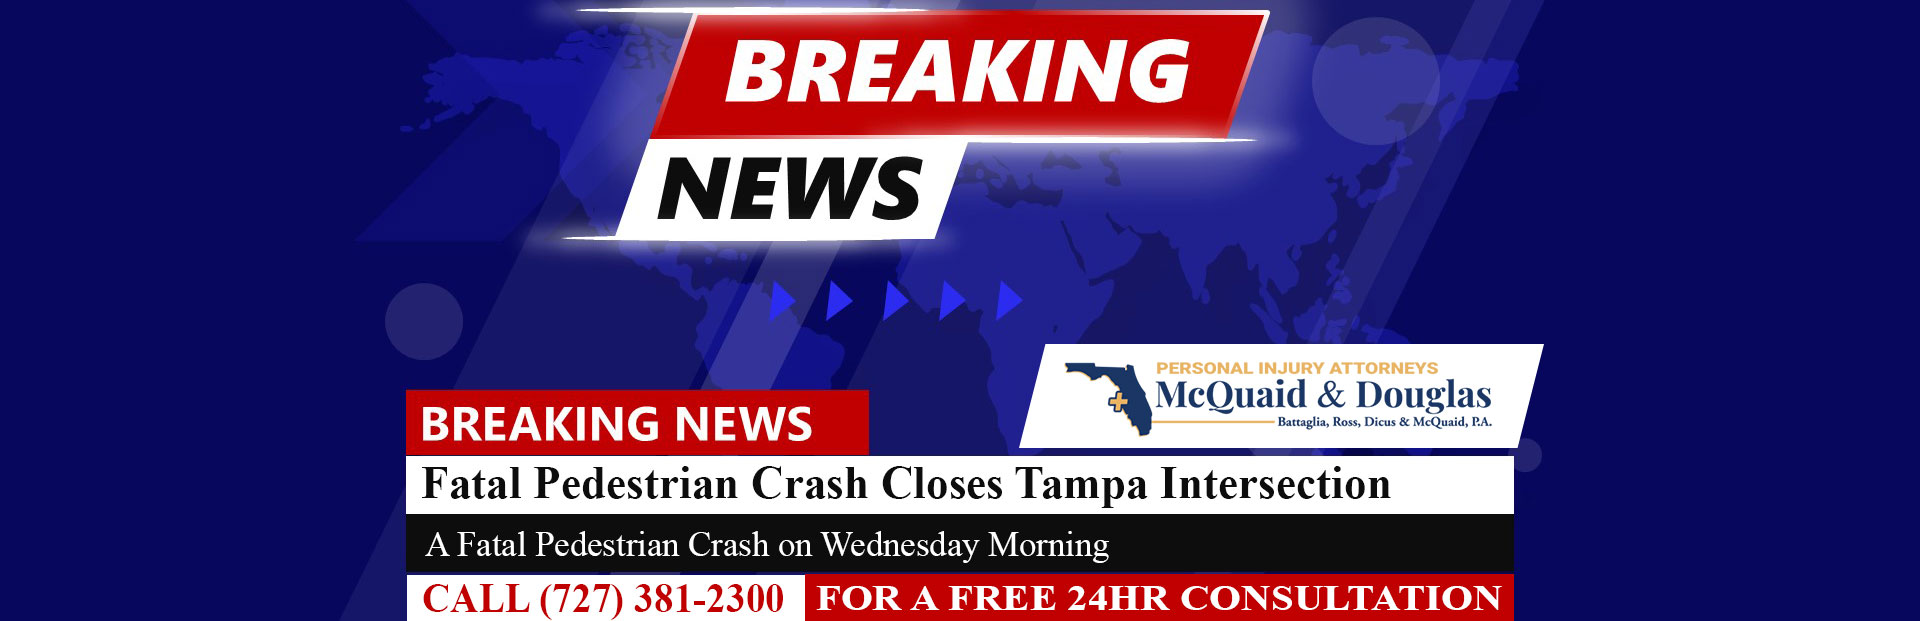 [03-02-24] La investigación de un accidente fatal de peatones cierra la intersección de Tampa durante 2 horas